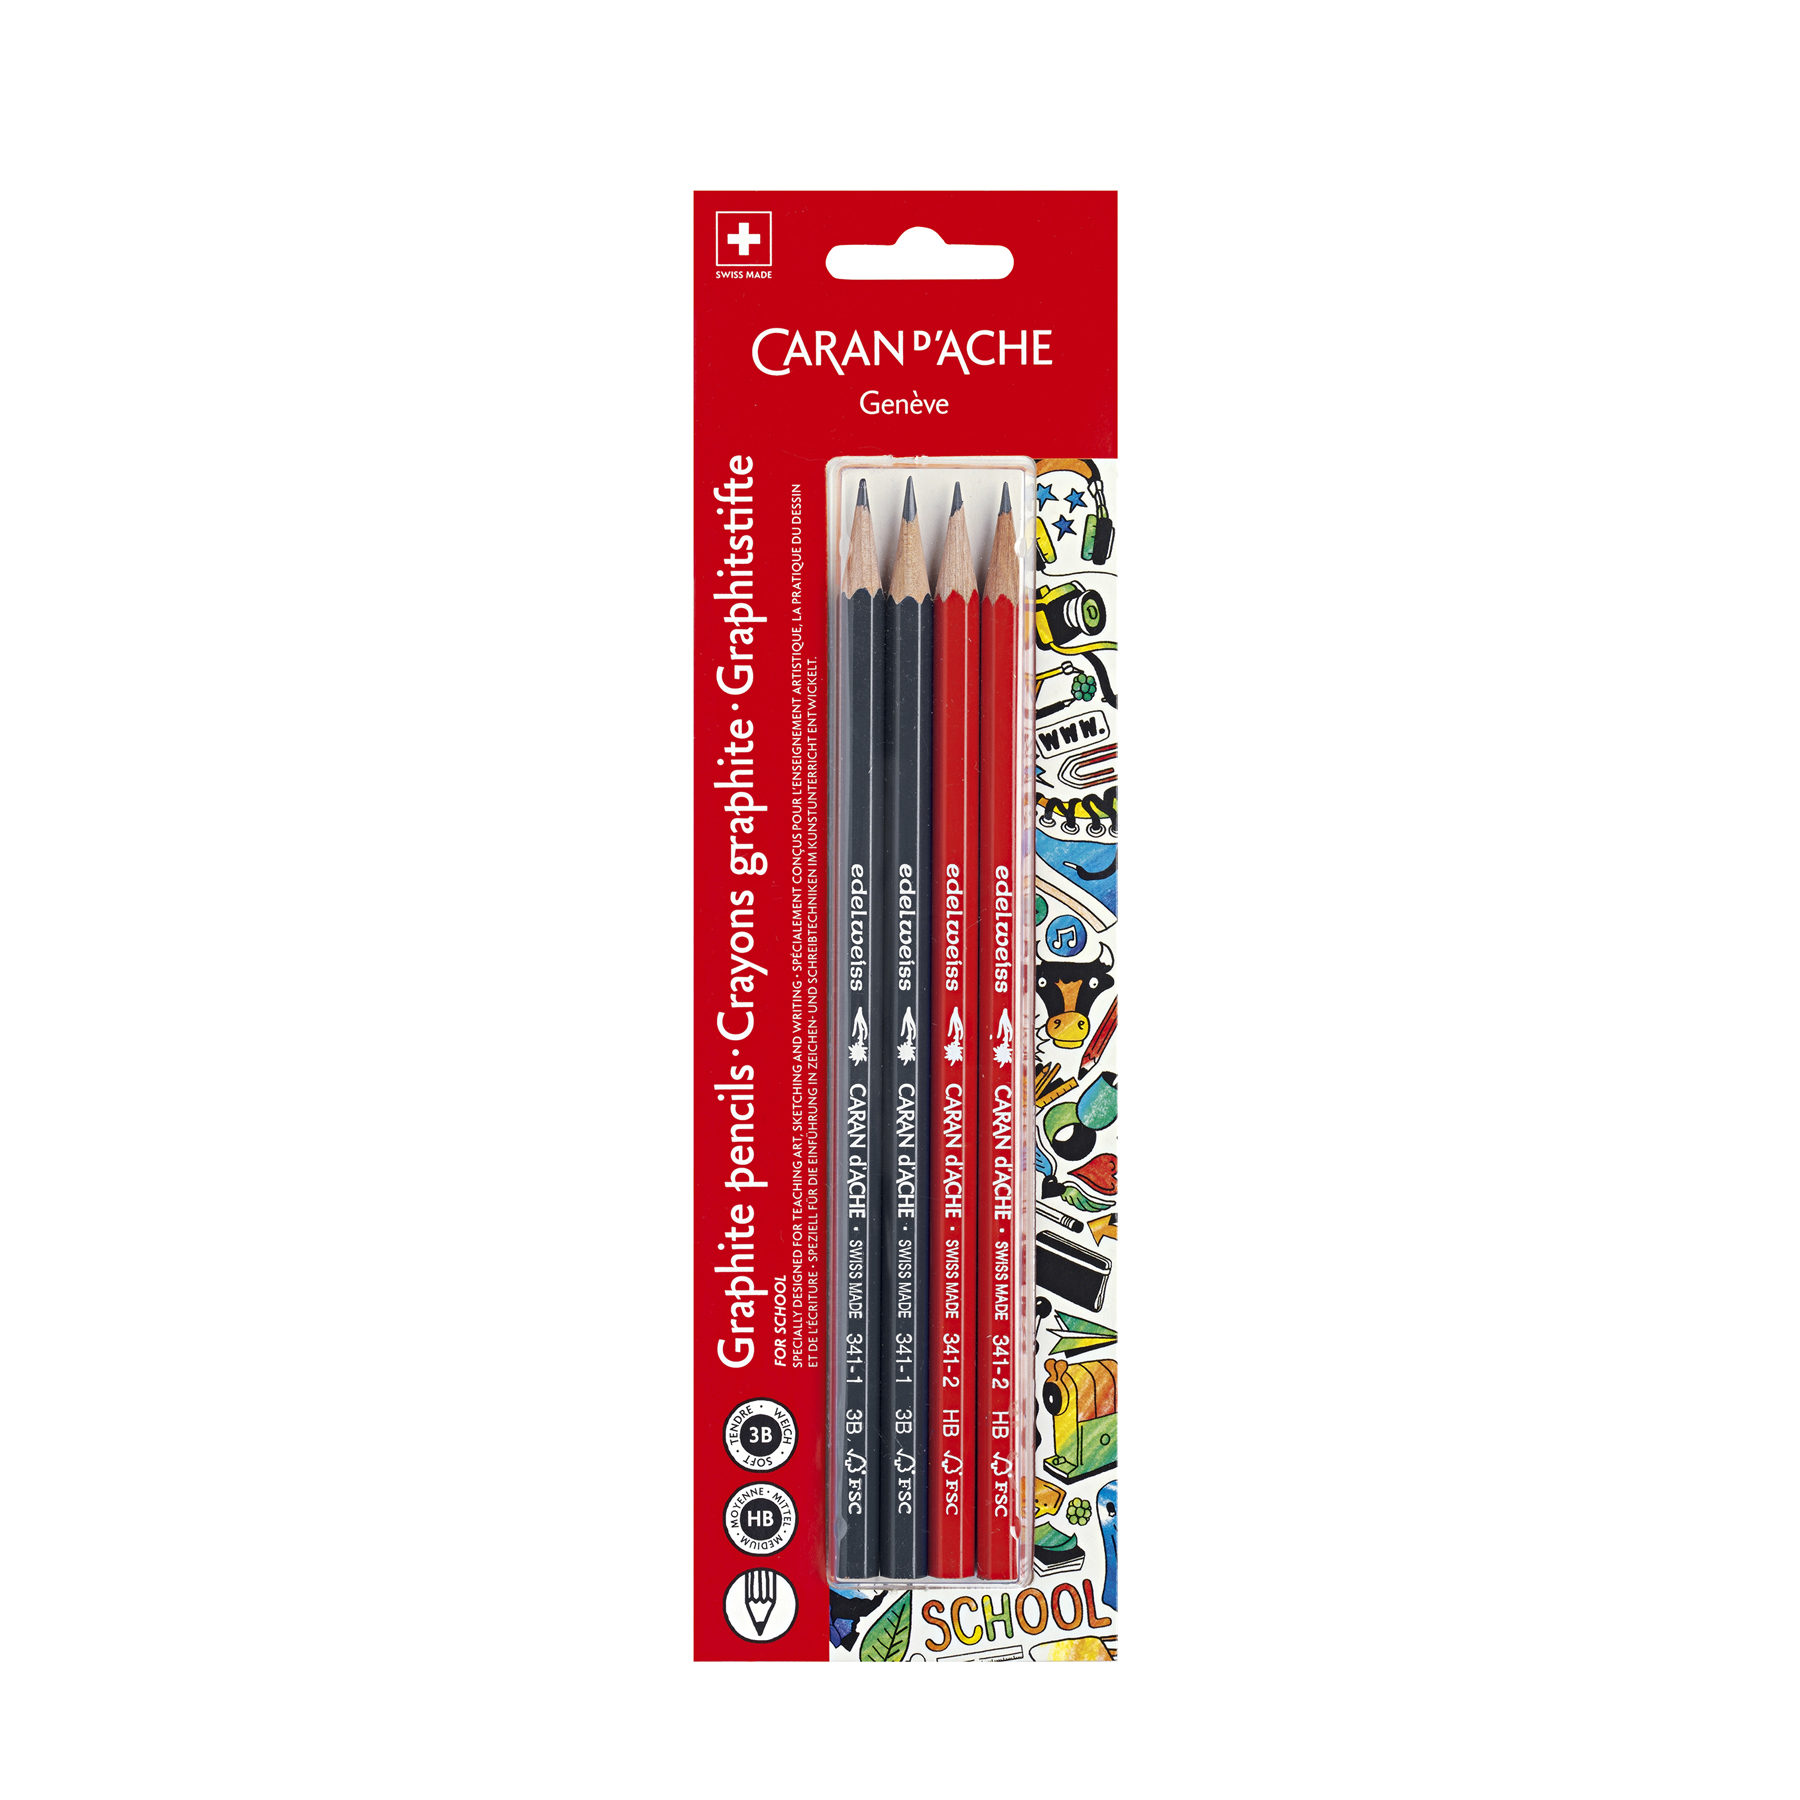 4 crayons graphites - 2H, HB, B, 2B - Crayons esquisse - Crayons de Dessin  et Esquisse - Dessin - Pastel